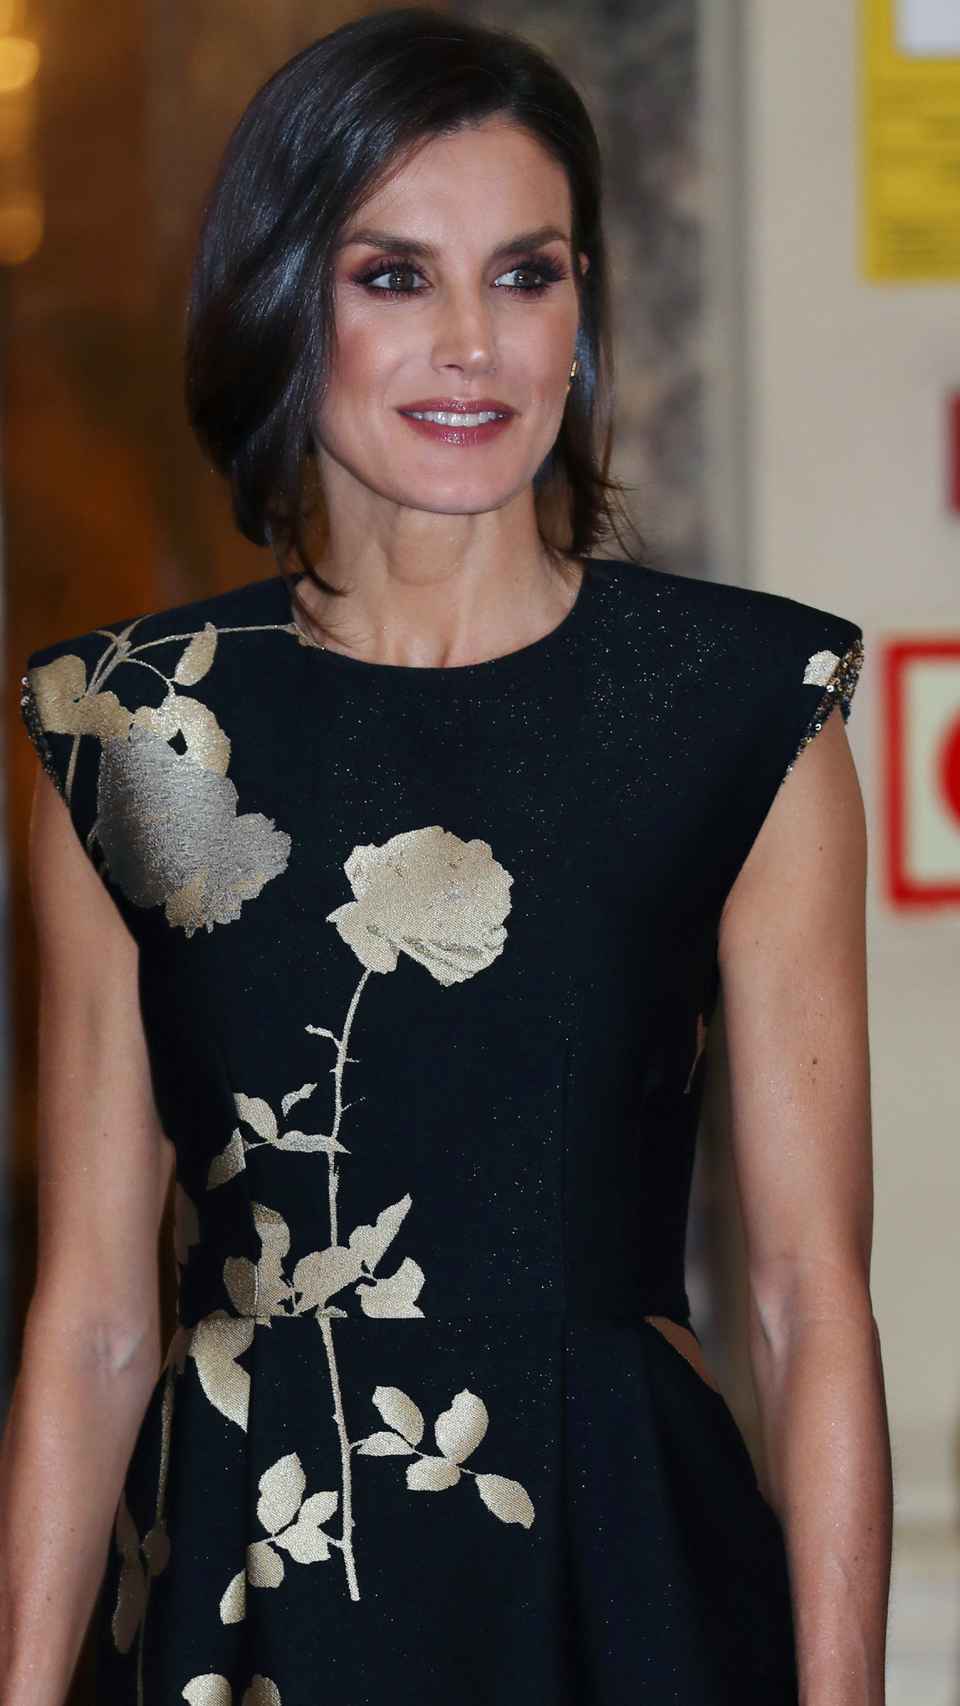 La Reina en 2019 durante los premios Francisco Cerecedo en Madrid.